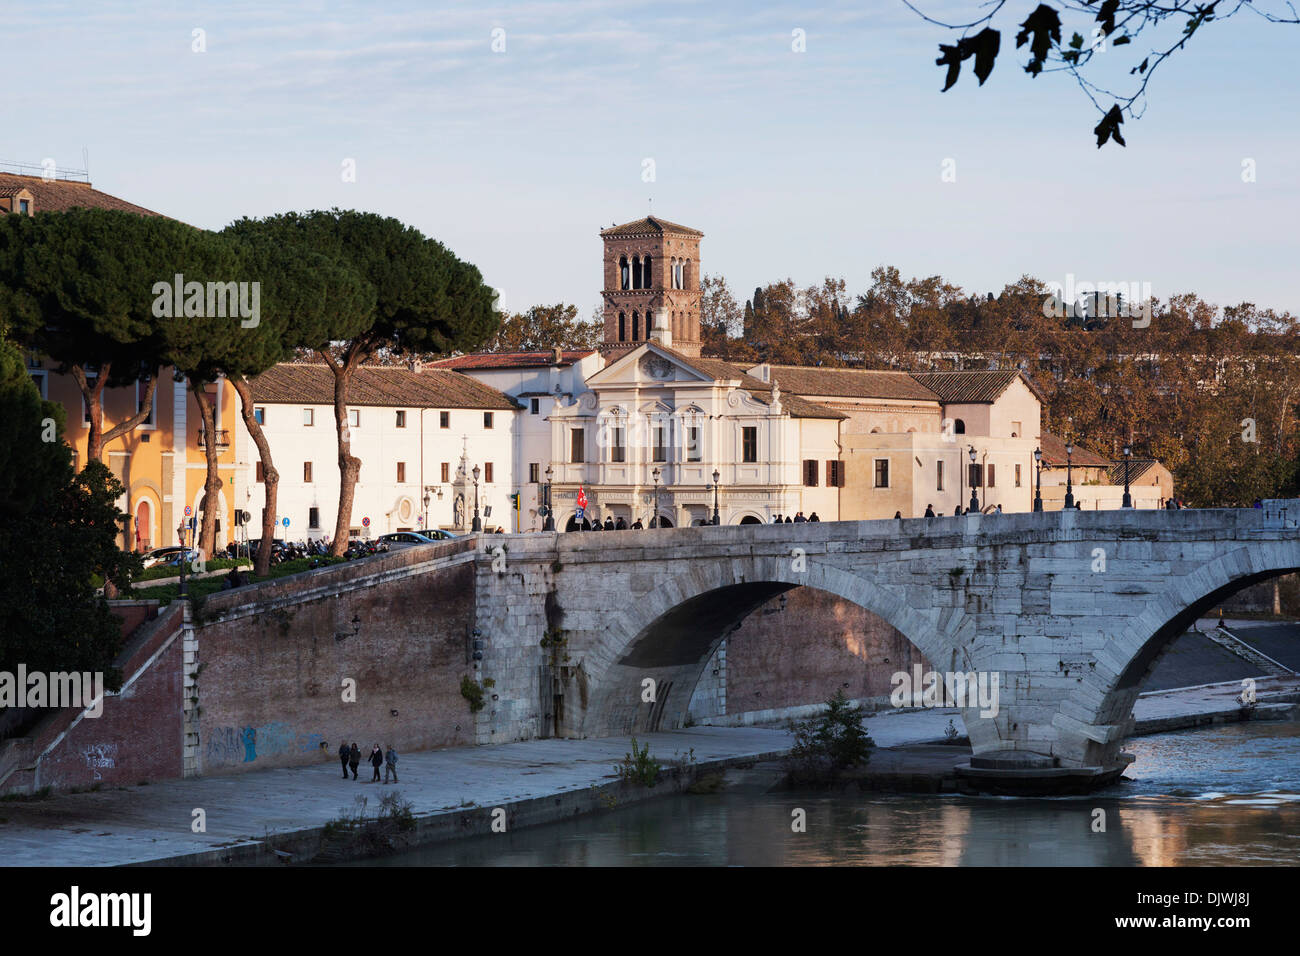 Isola Tiberina, Isola Tiberina, con Ponte Fabricio e la Basilica di San Bartolomeo all'Isola, Roma, lazio, Italy Foto Stock